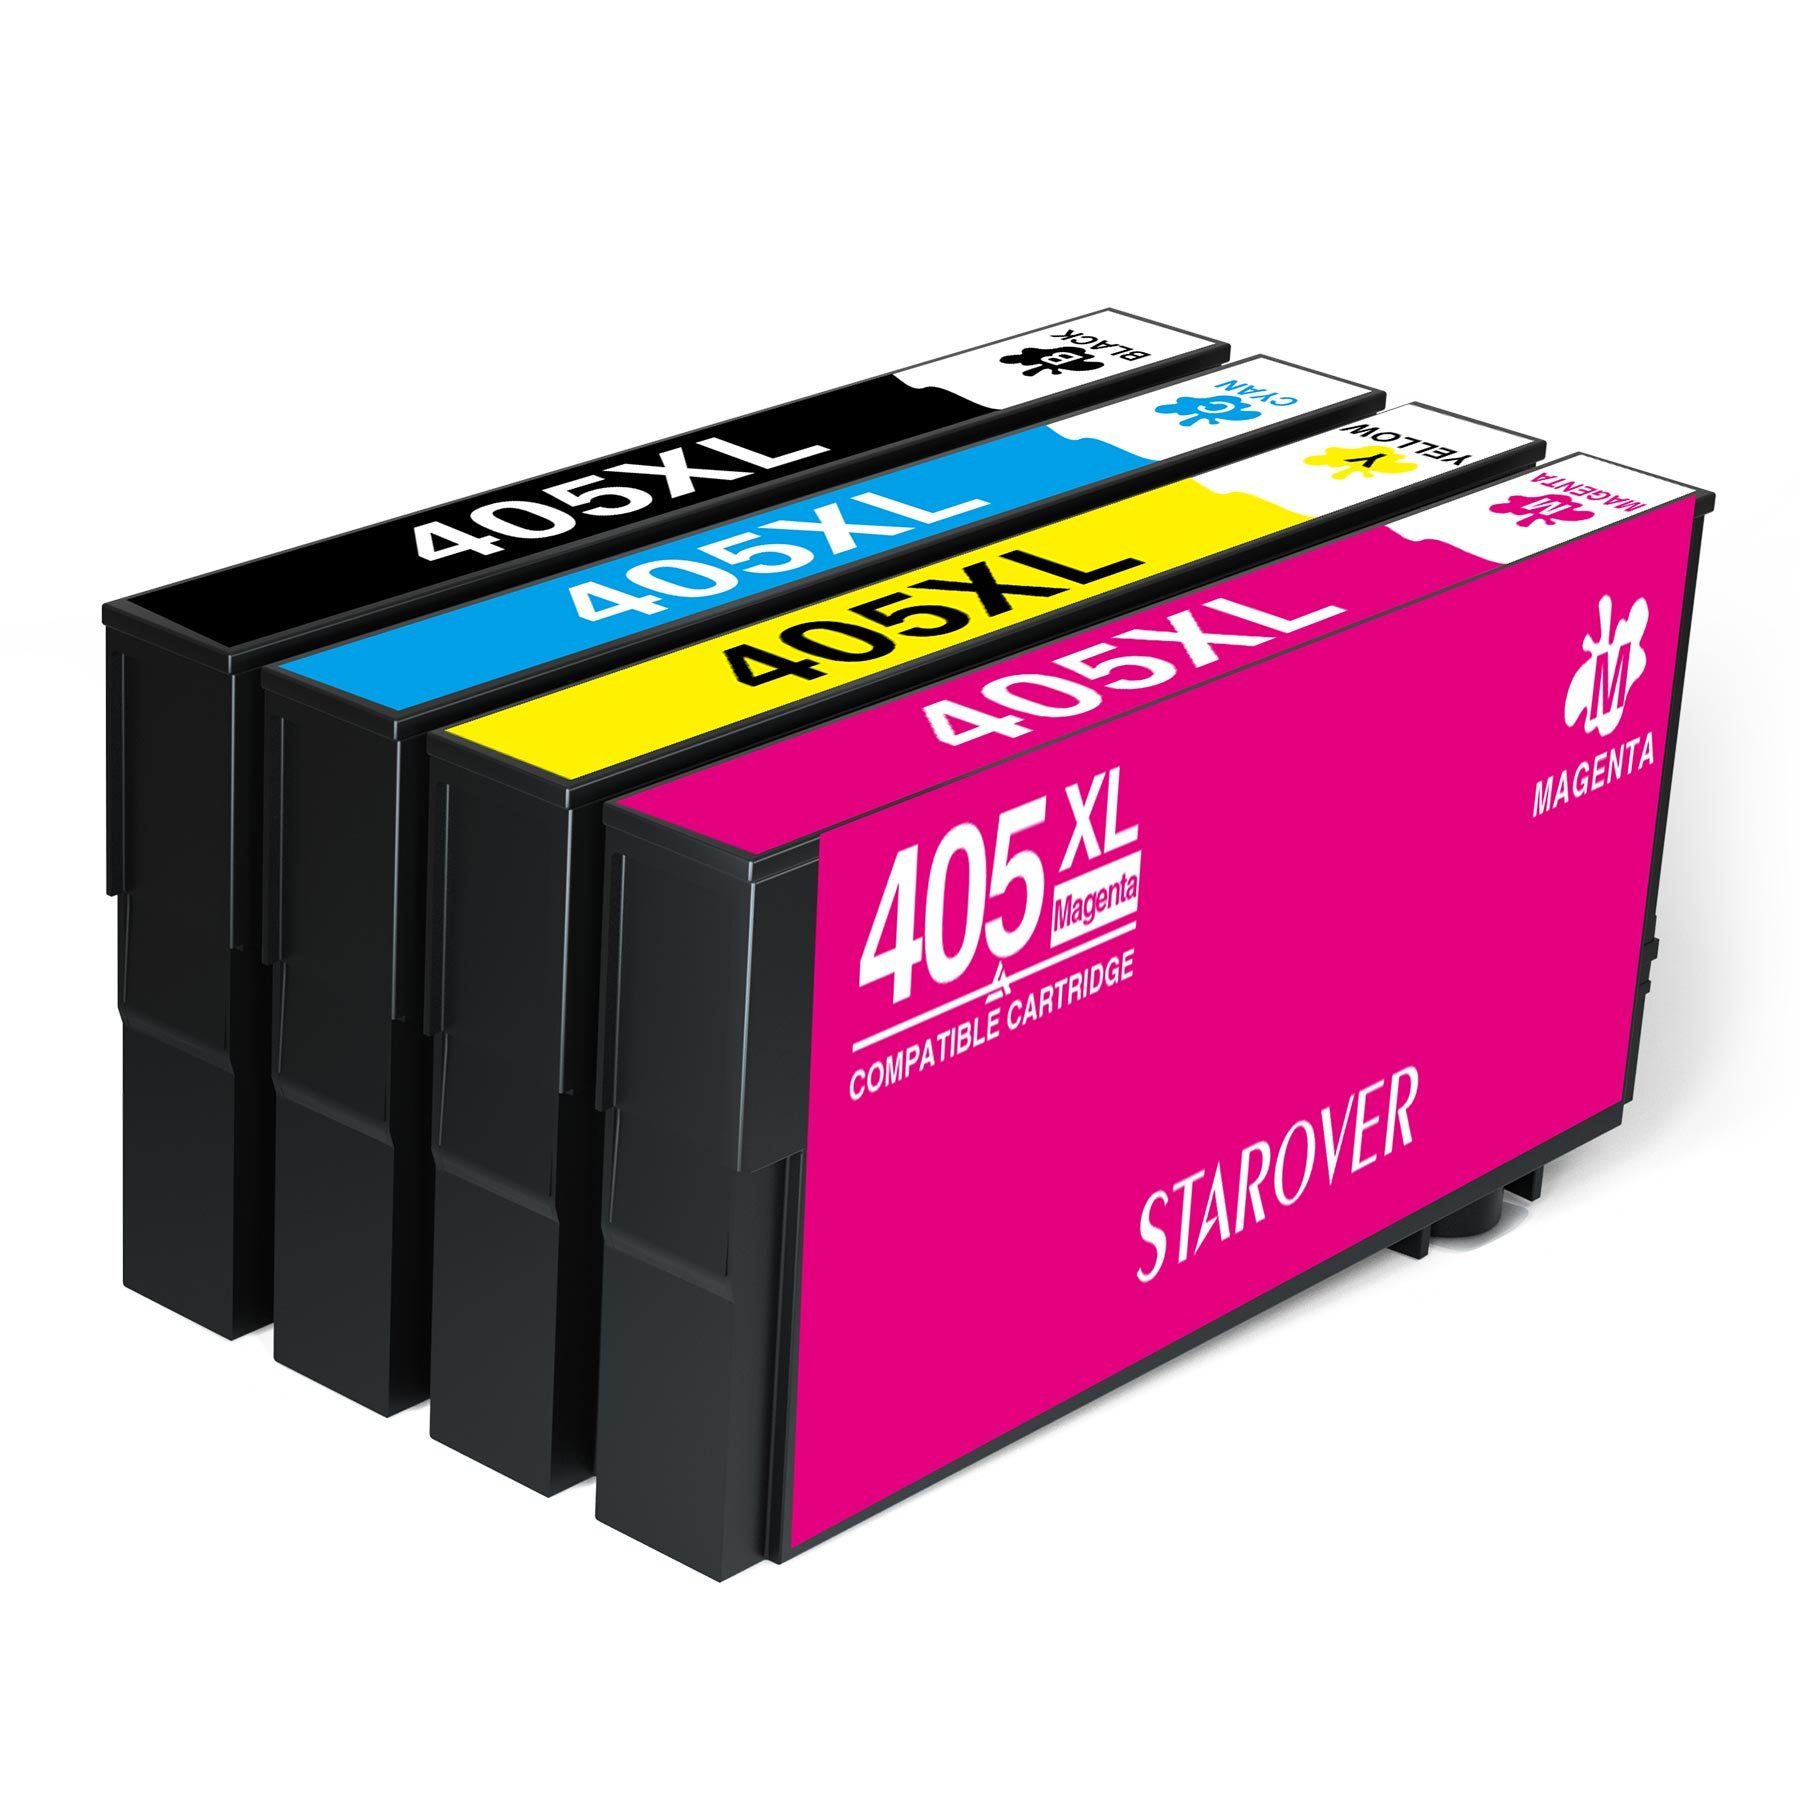 STAROVER 405 XL Druckerpatronen kompatibel für EPSON 405XL Multipack Tintenpatrone (epson workforce pro WF-3820 3825 4820 4825 4830 DWF, WF-7310DTW WF-7830DTWF WF-7835DTWF WF-7840DTWF) 1x Schwarz, 1x Cyan, 1x Magenta, 1x Gelb (4er-pack)